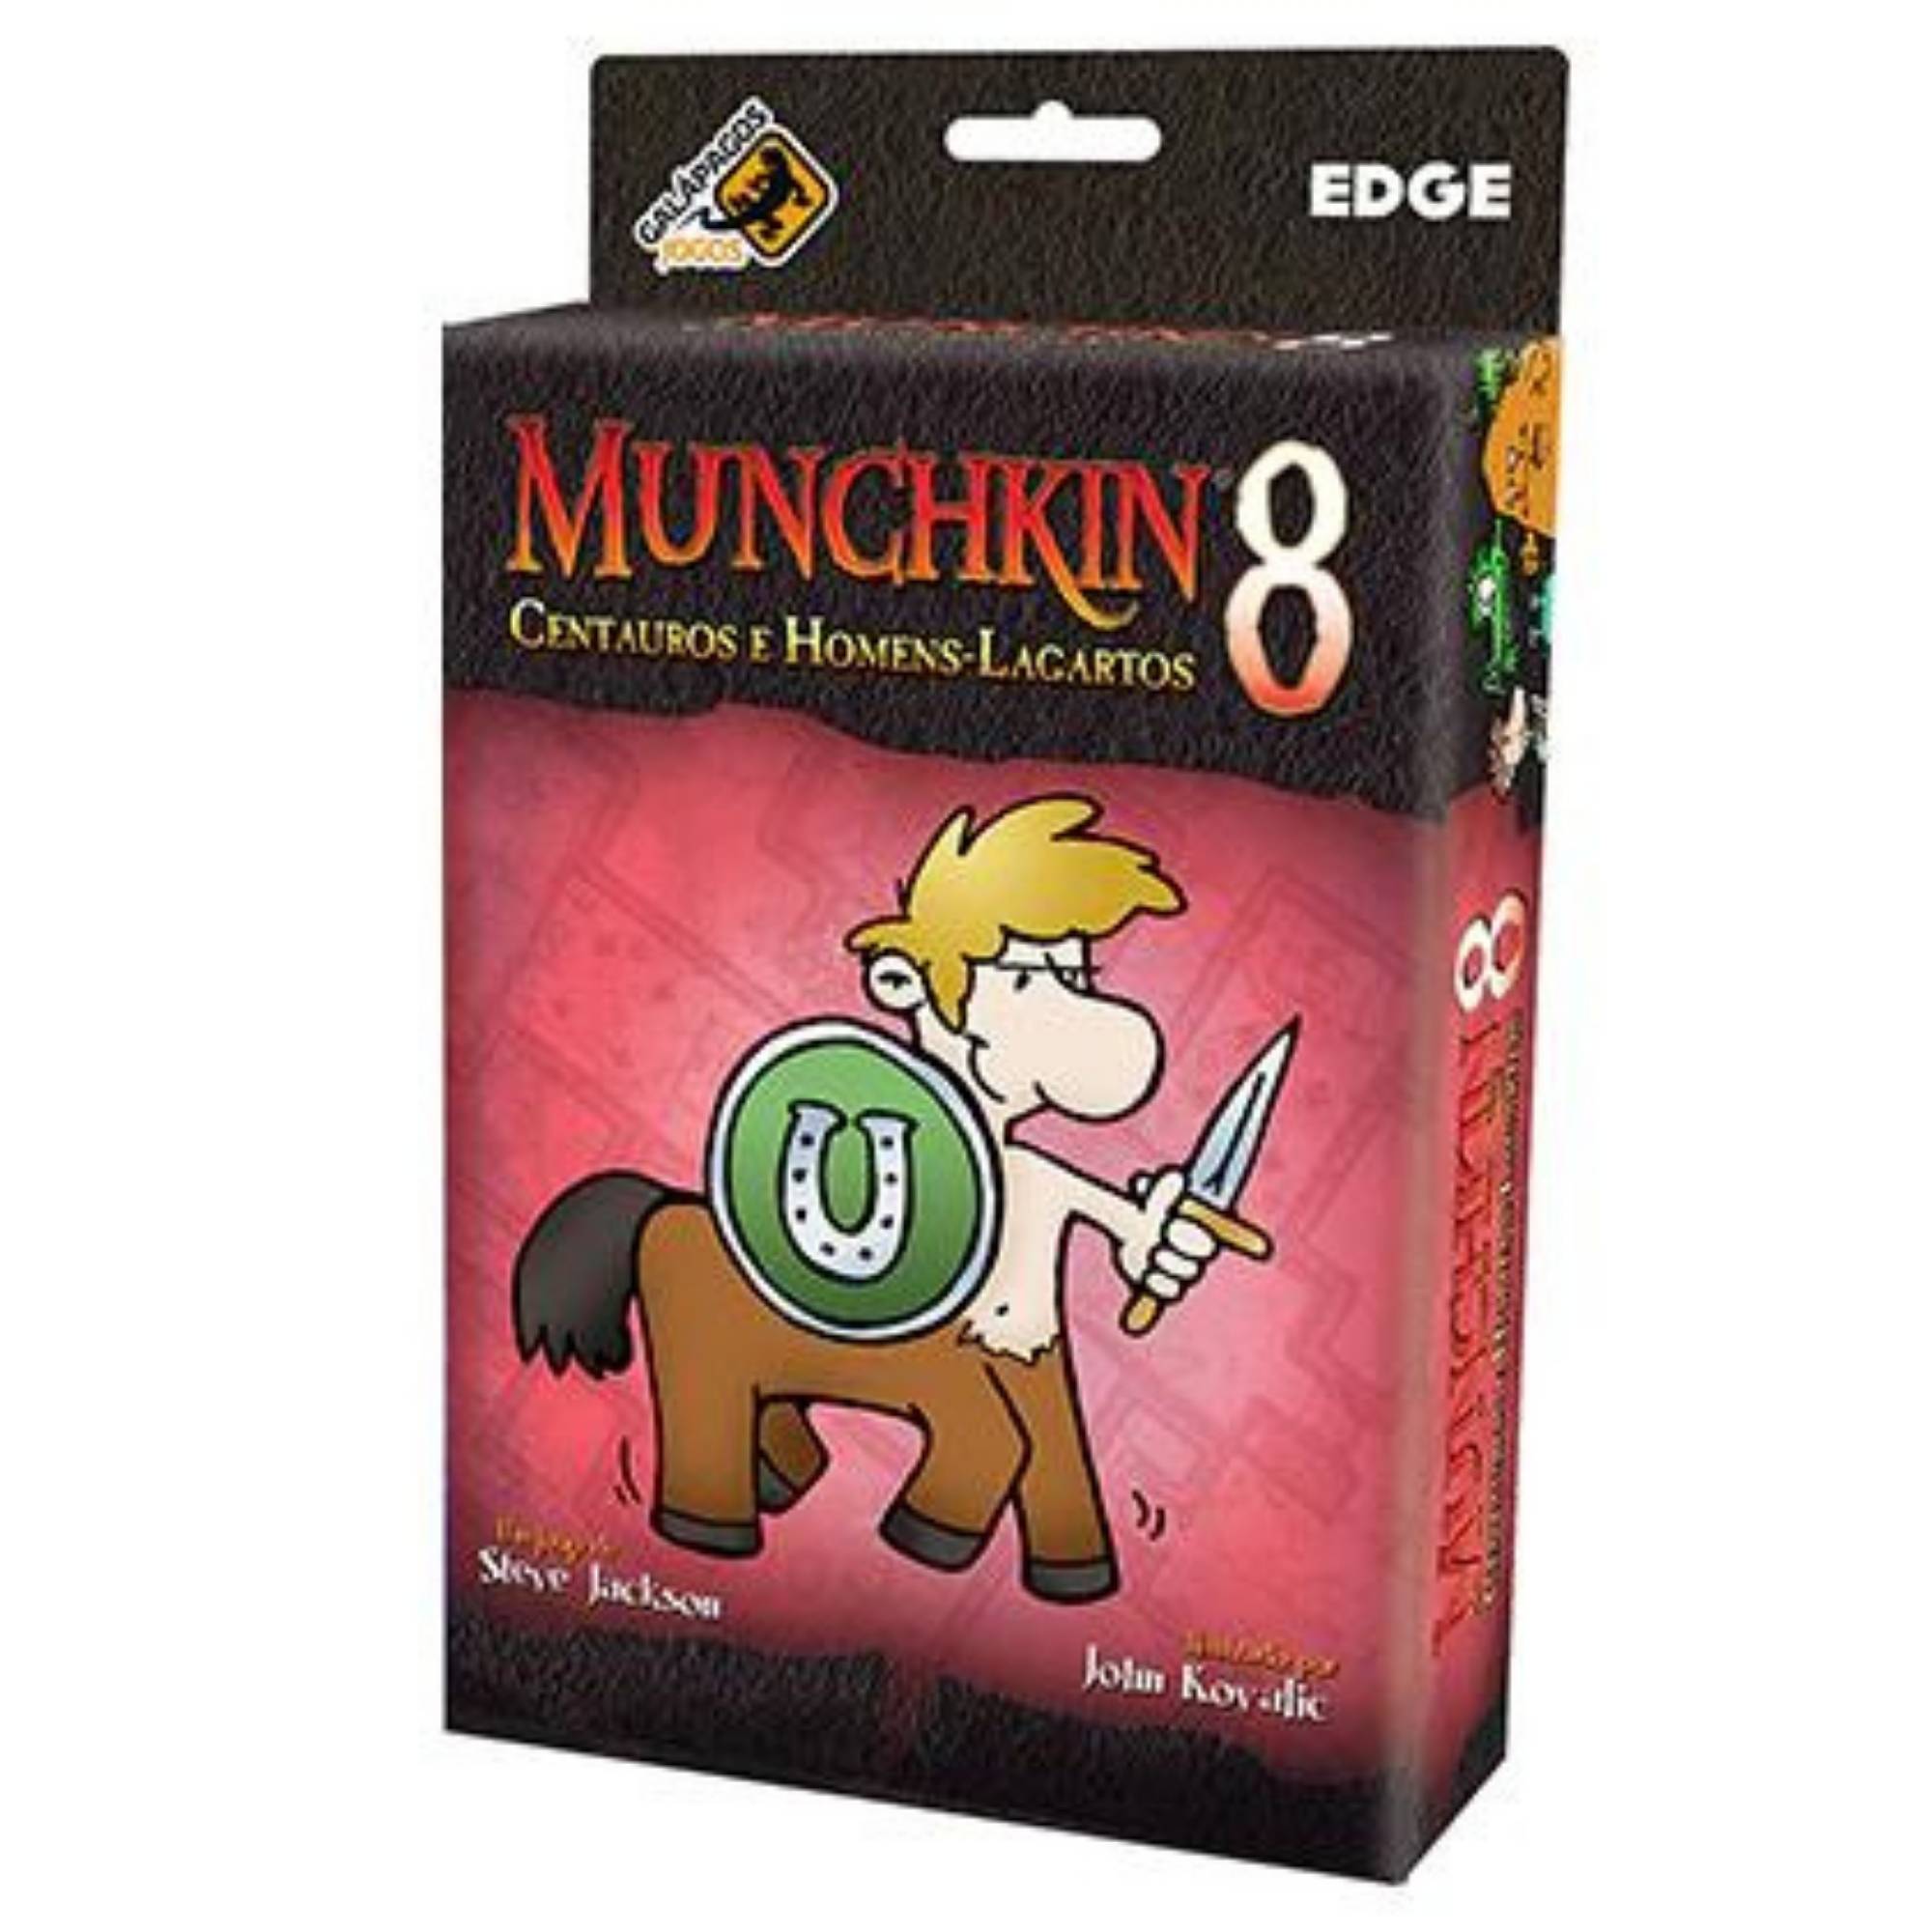 Munchkin 8 - Centauros e Homens Lagartos